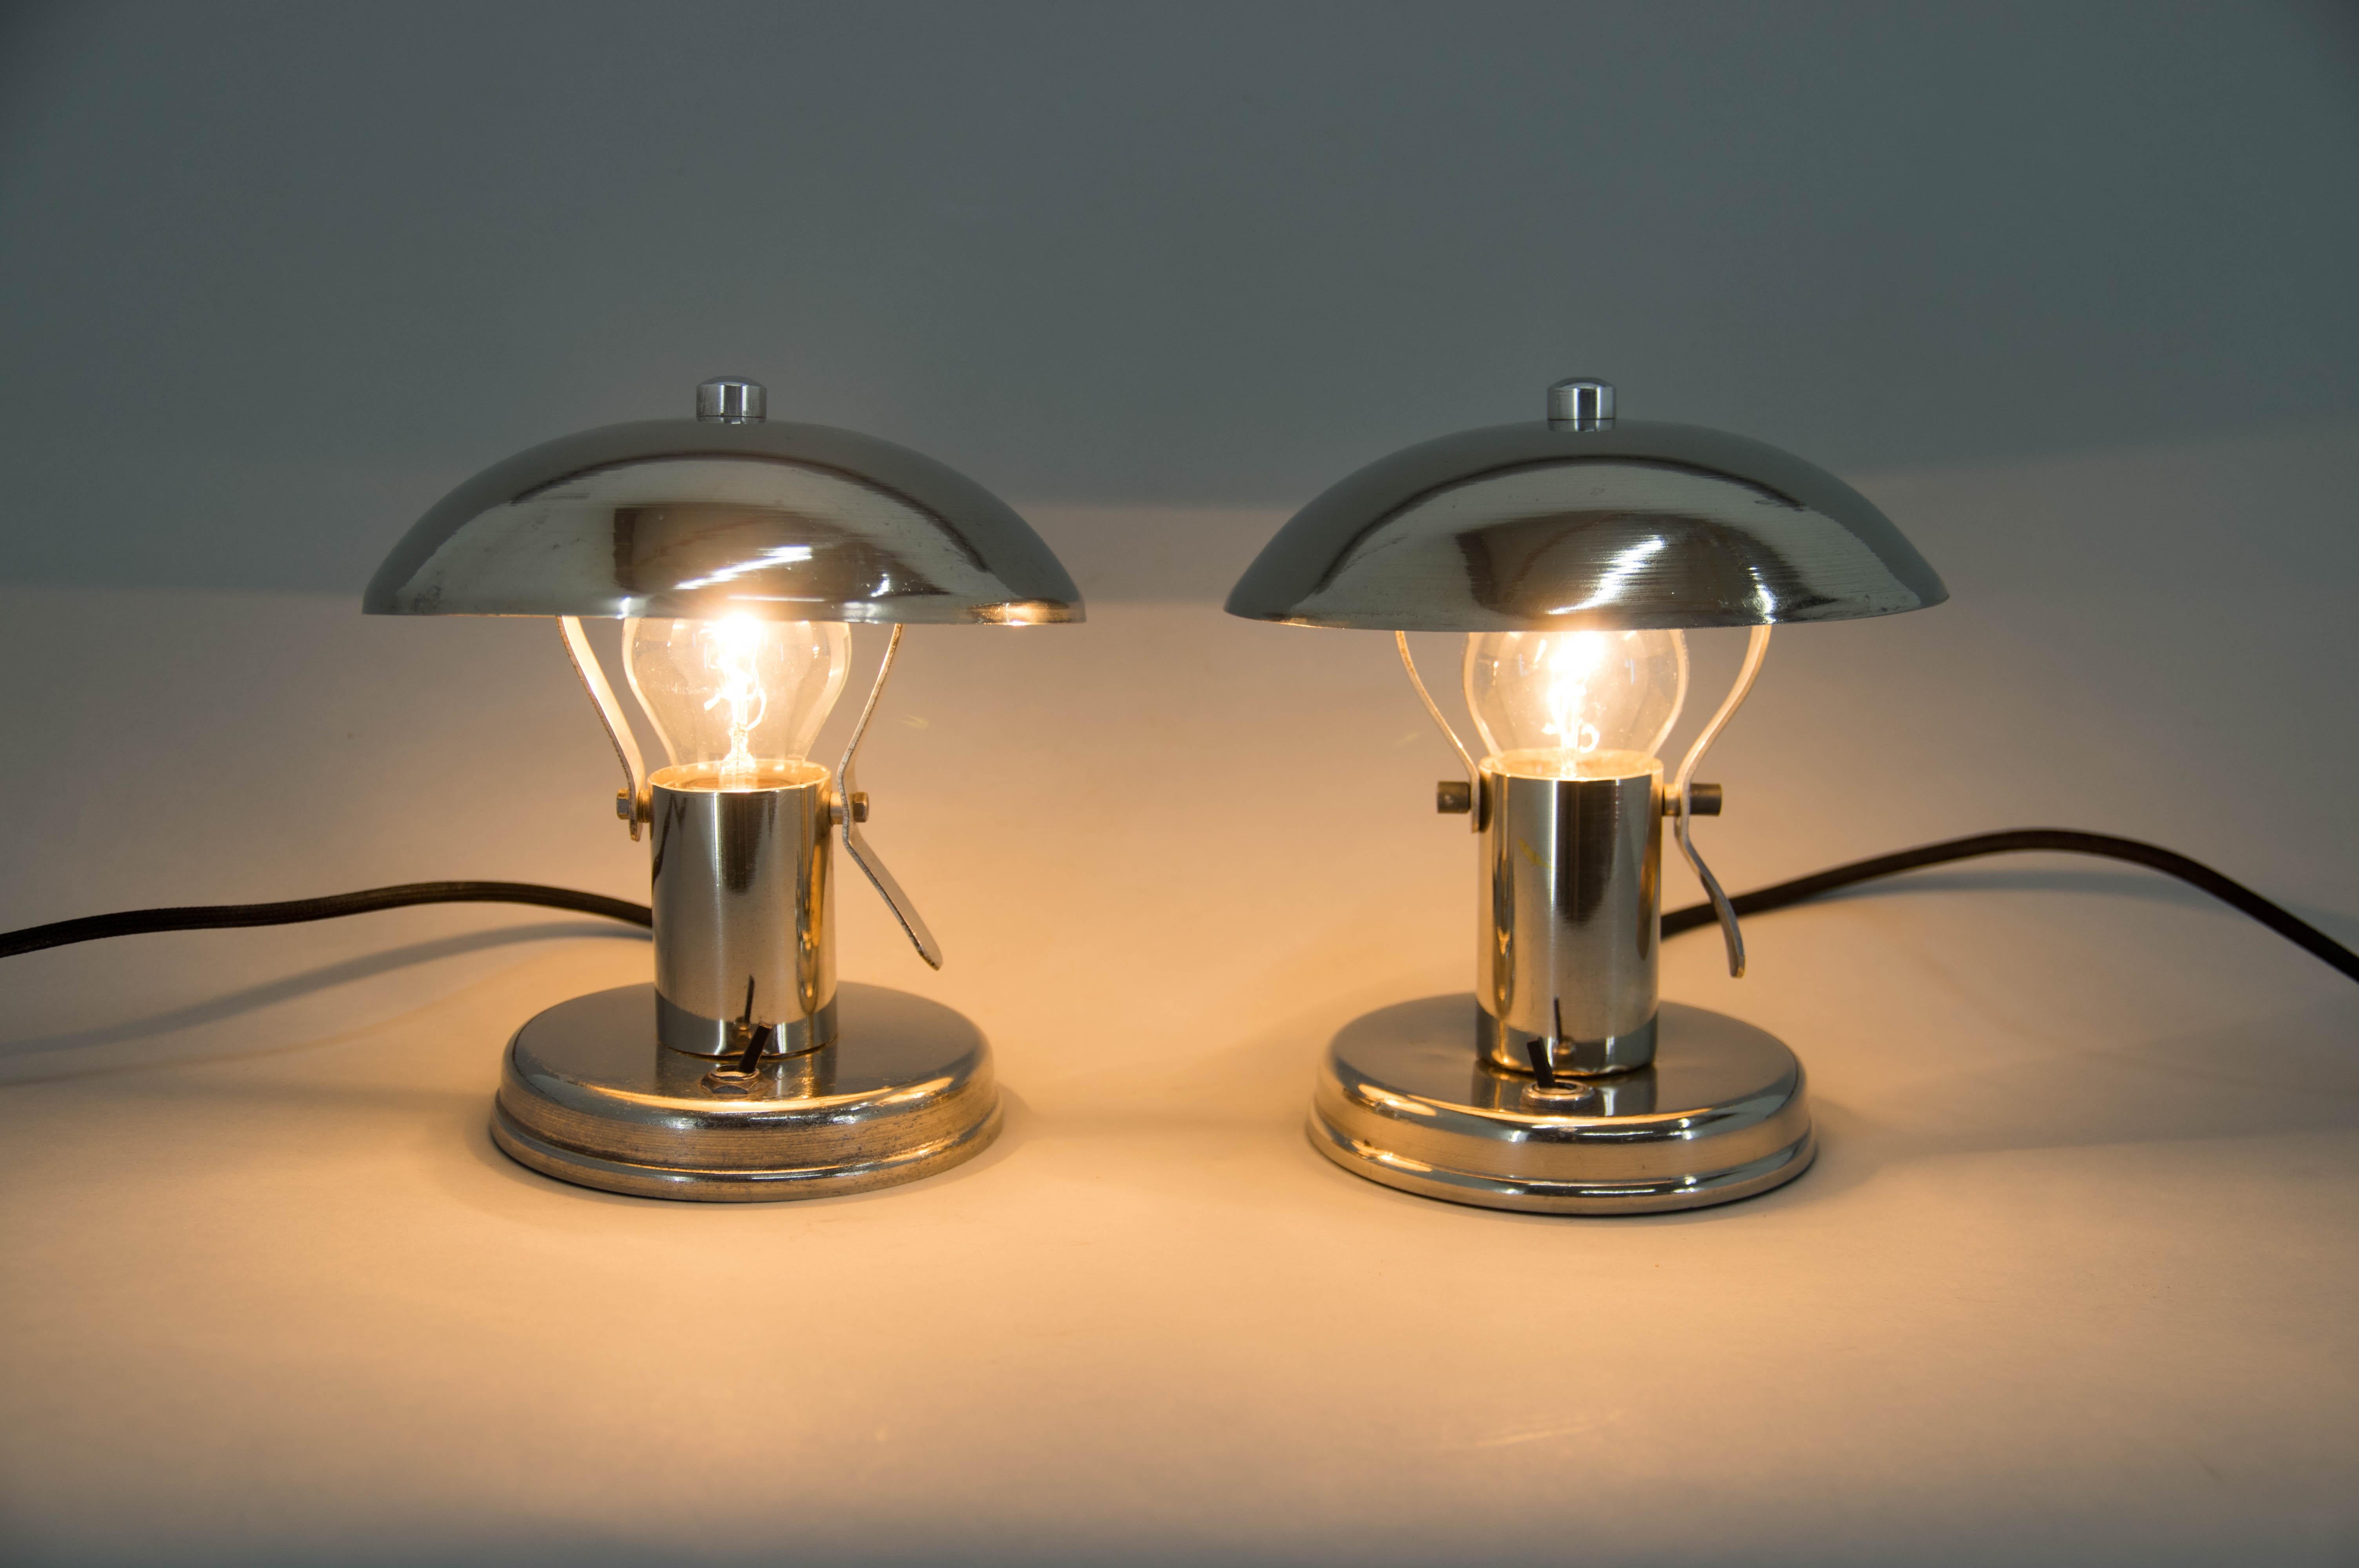 Zwei vernickelte Bauhaus-Tischlampen mit verstellbaren Schirmen
Restauriert, gereinigt, neu verkabelt, poliert.
1x40W, E25-E27 Glühbirne
Inklusive US-Steckeradapter.